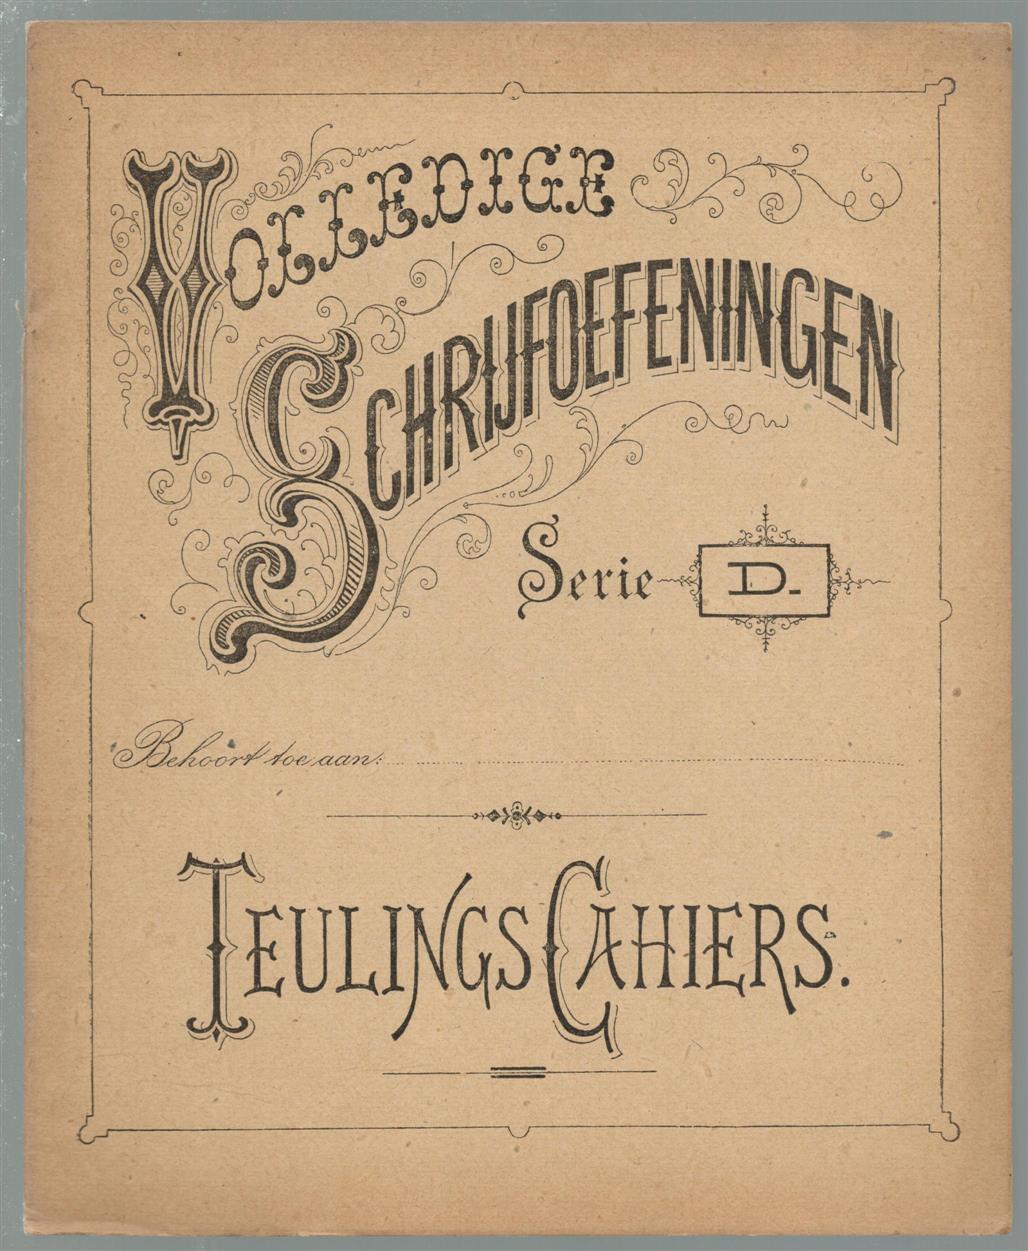 Laarschot, F. van de - volledige schrijfoefeningen - Teulings-cahiers, serie D